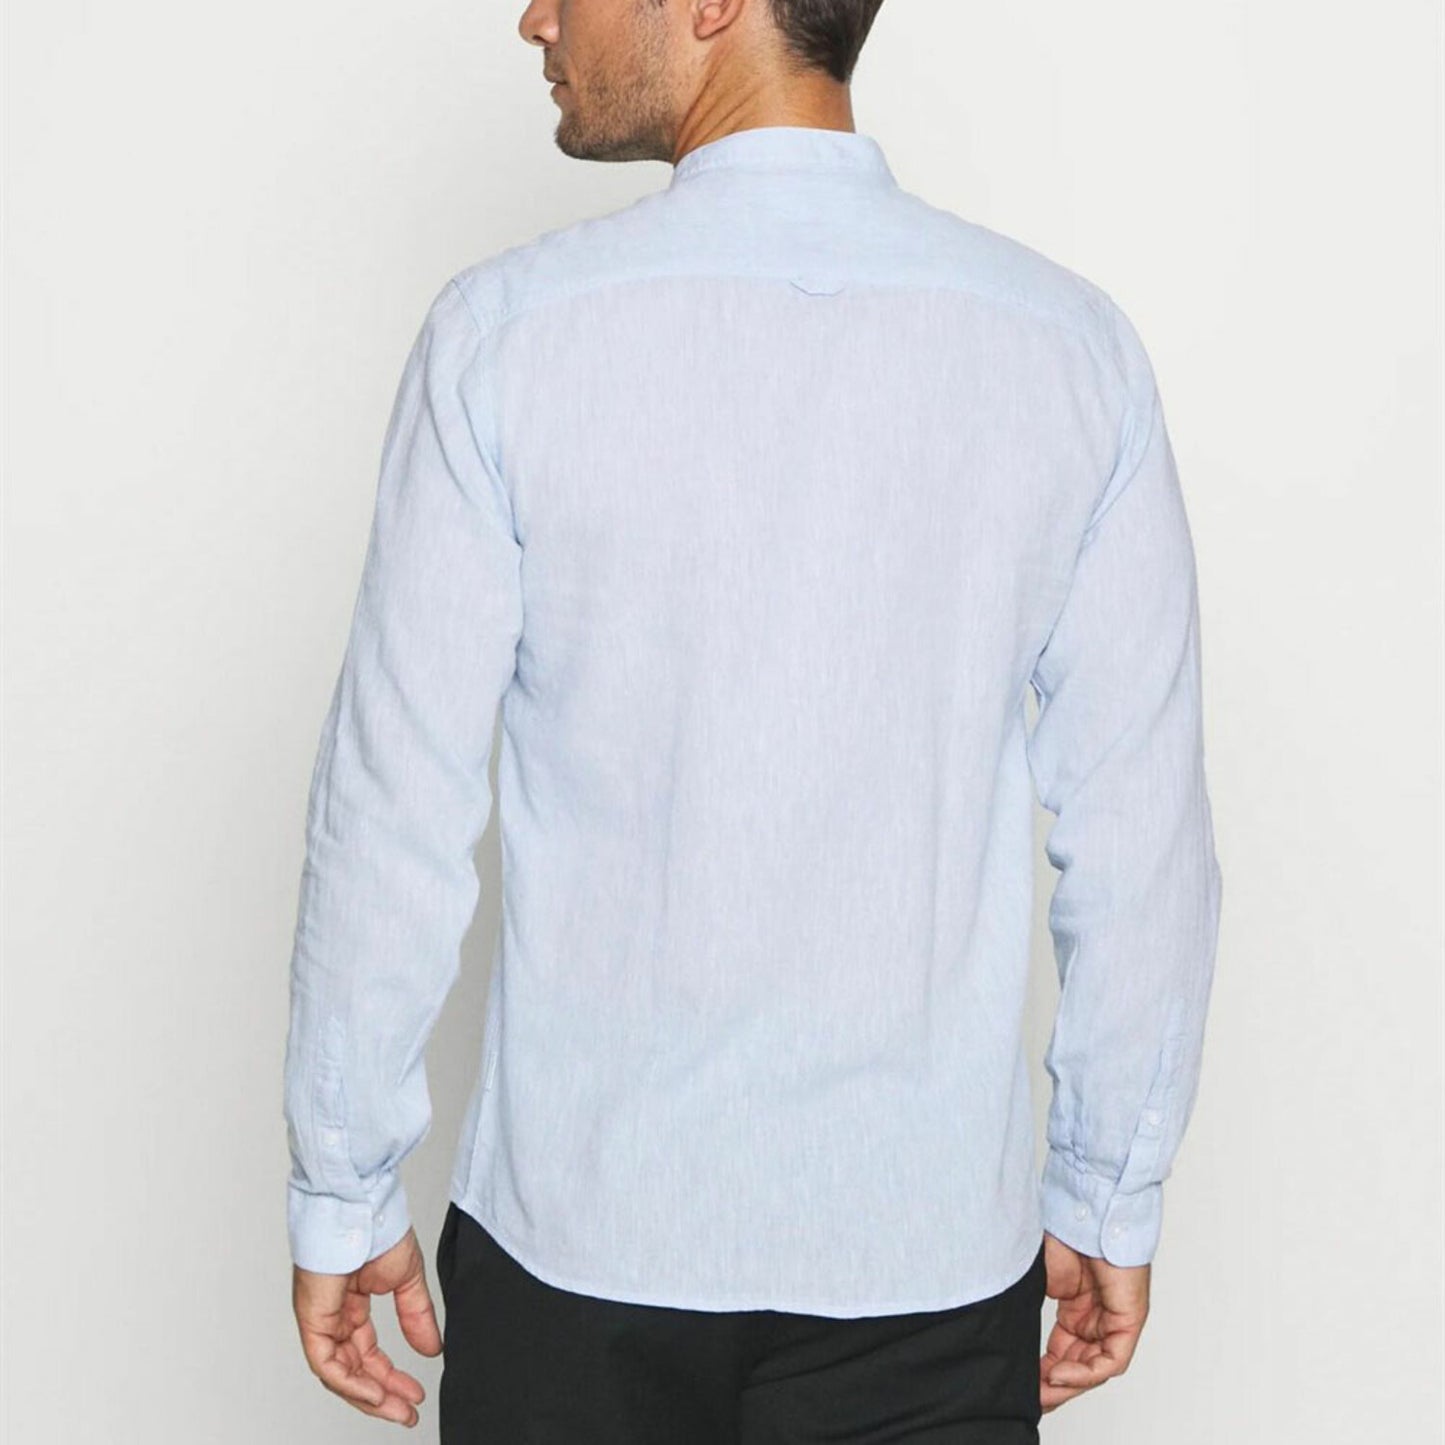 Banded Collar Dress Shirt - Light Blue